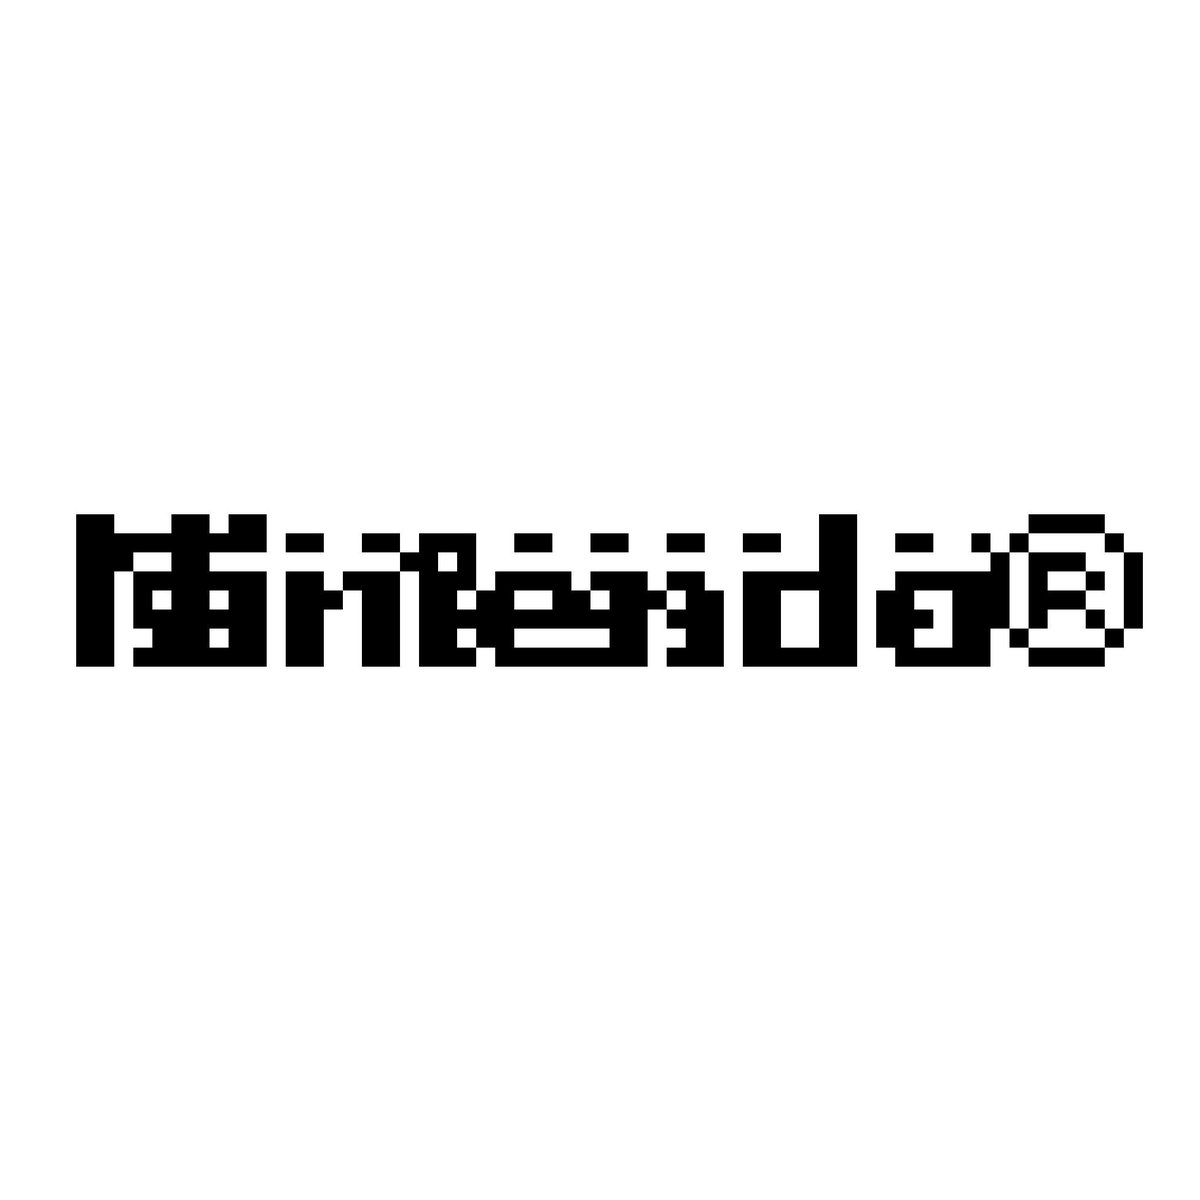 Twitter पर しゃんぶるだんふぁん ルミネエスト ゲームボーイソフトの起動に失敗したときのnintendoロゴのドット絵をやりました Pixelart ドット絵 ゲームボーイあるある しゃんぶるだんふぁん